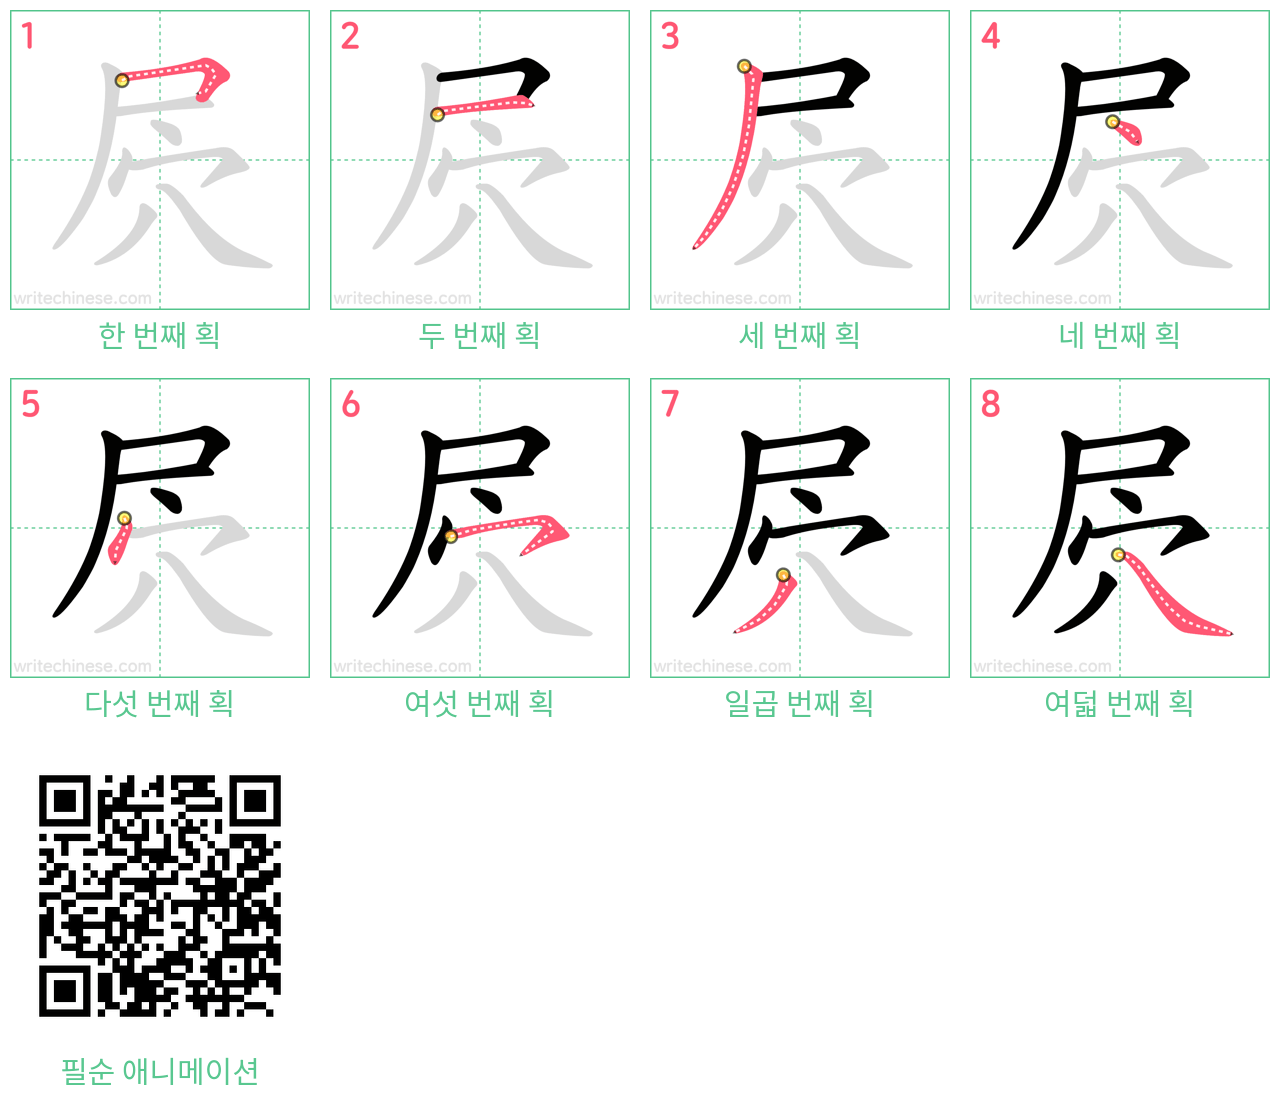 屄 step-by-step stroke order diagrams